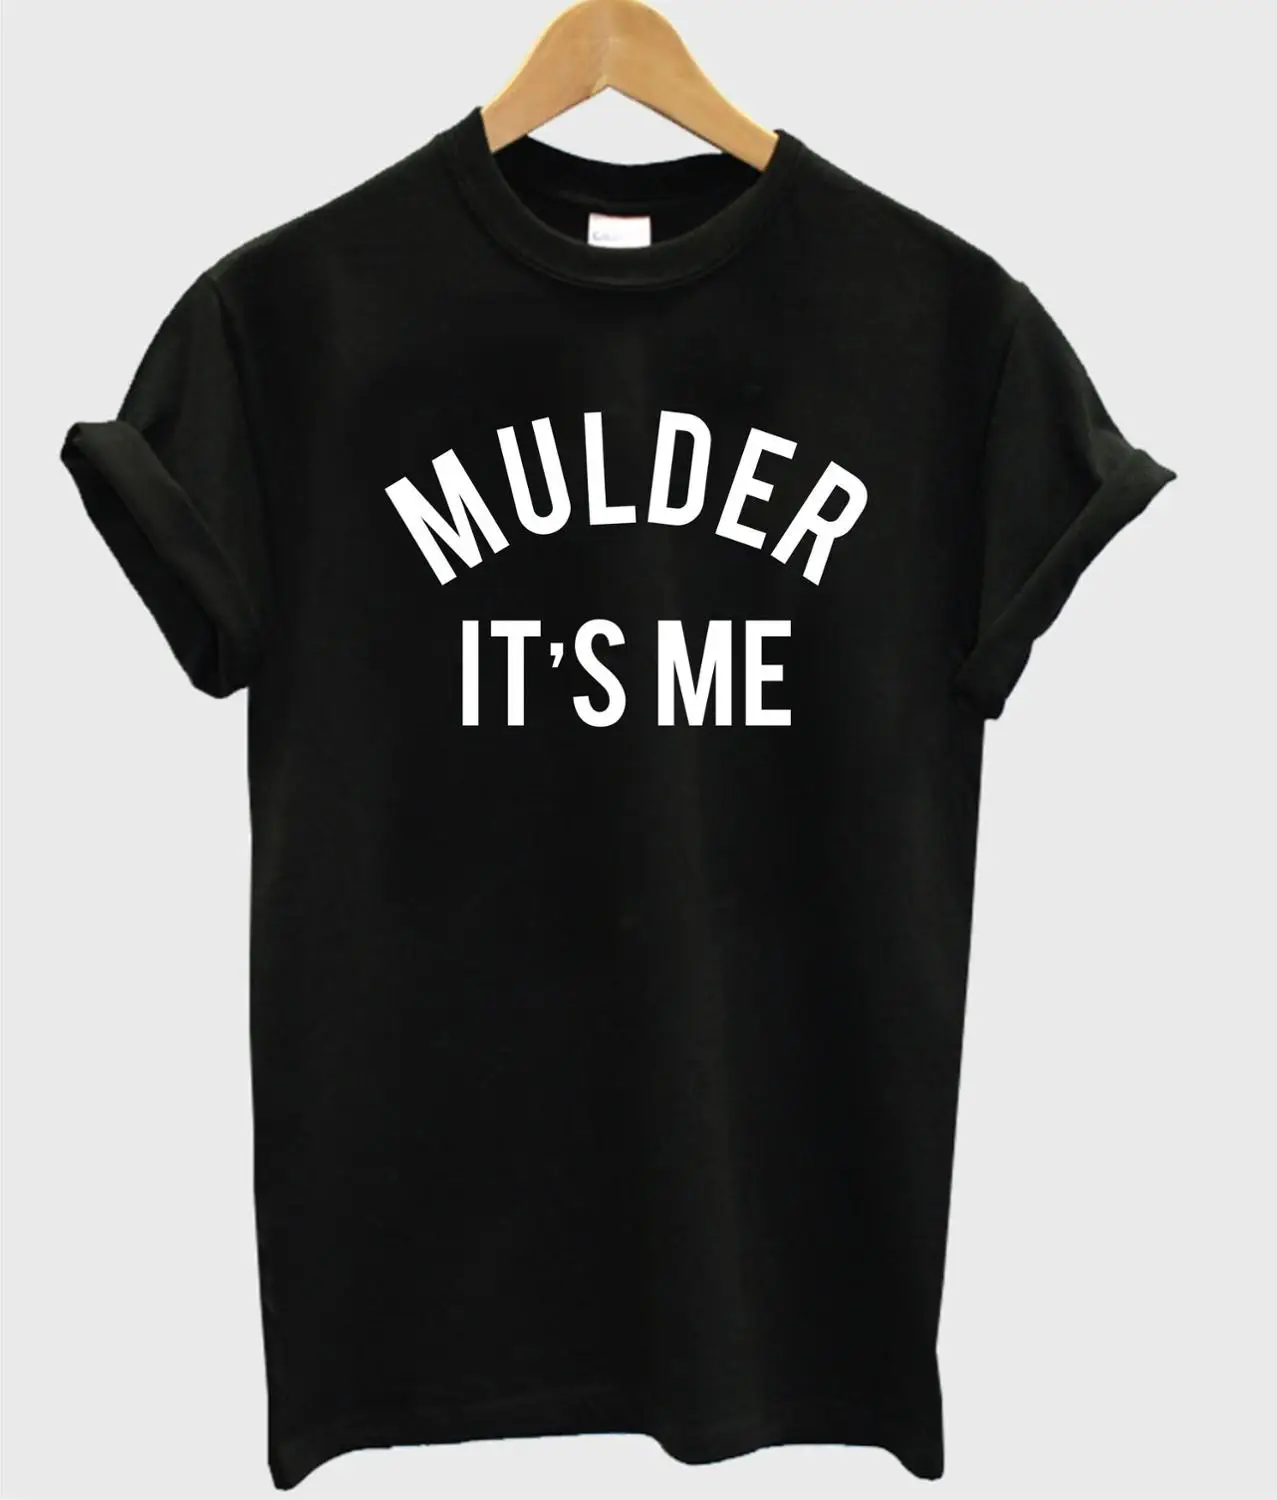 Mulder it's me, женская футболка с буквенным принтом, хлопковая, повседневная, забавная, футболка для леди, топ, футболка, хипстер, Прямая поставка, Z-730 - Цвет: Черный